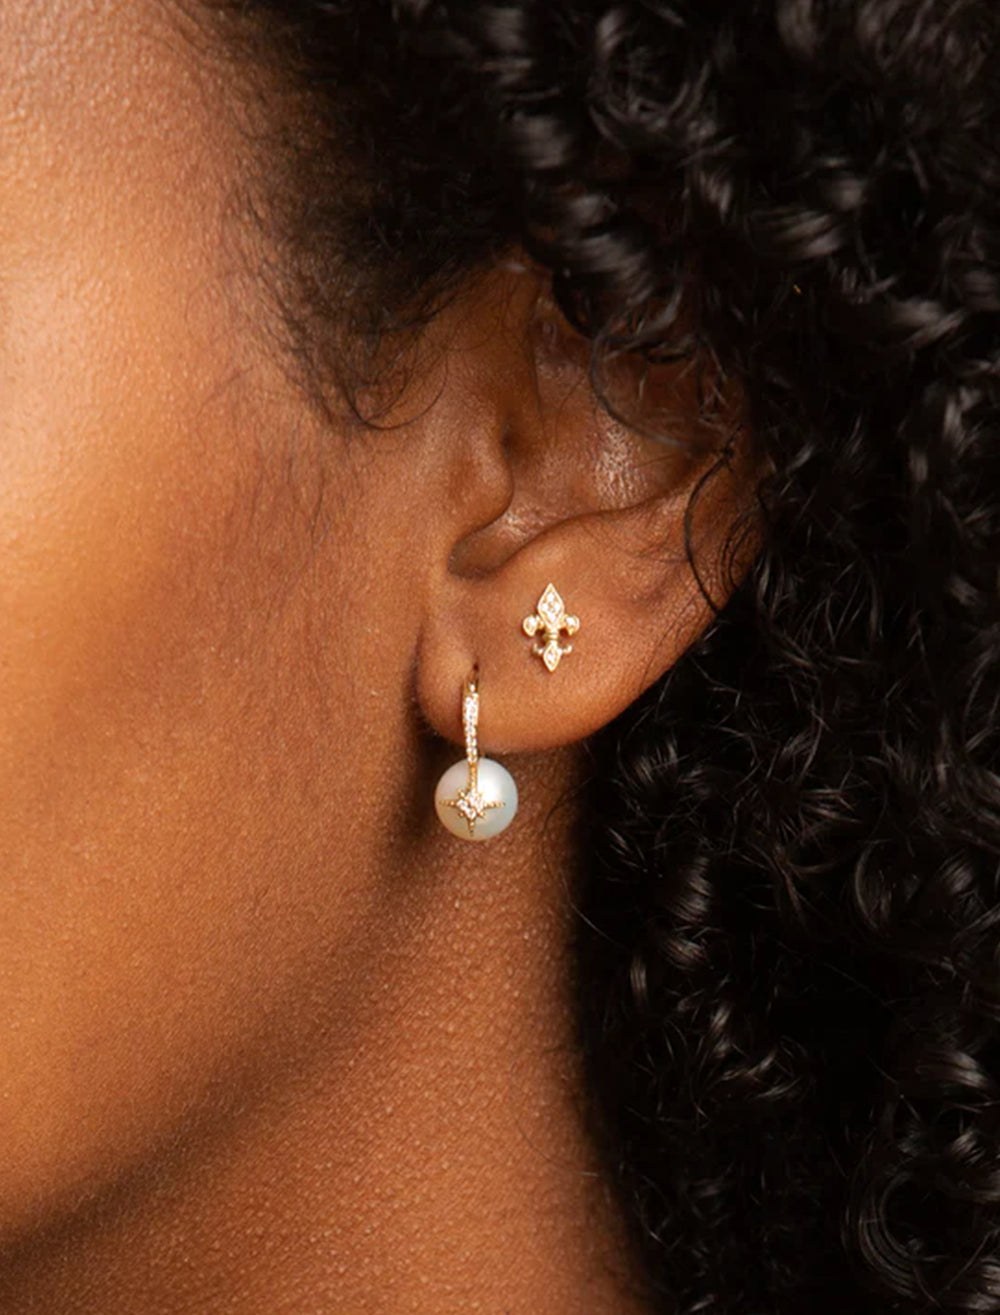 Model wearing Sydney Evan's pearl and pave starburst bead earrings.